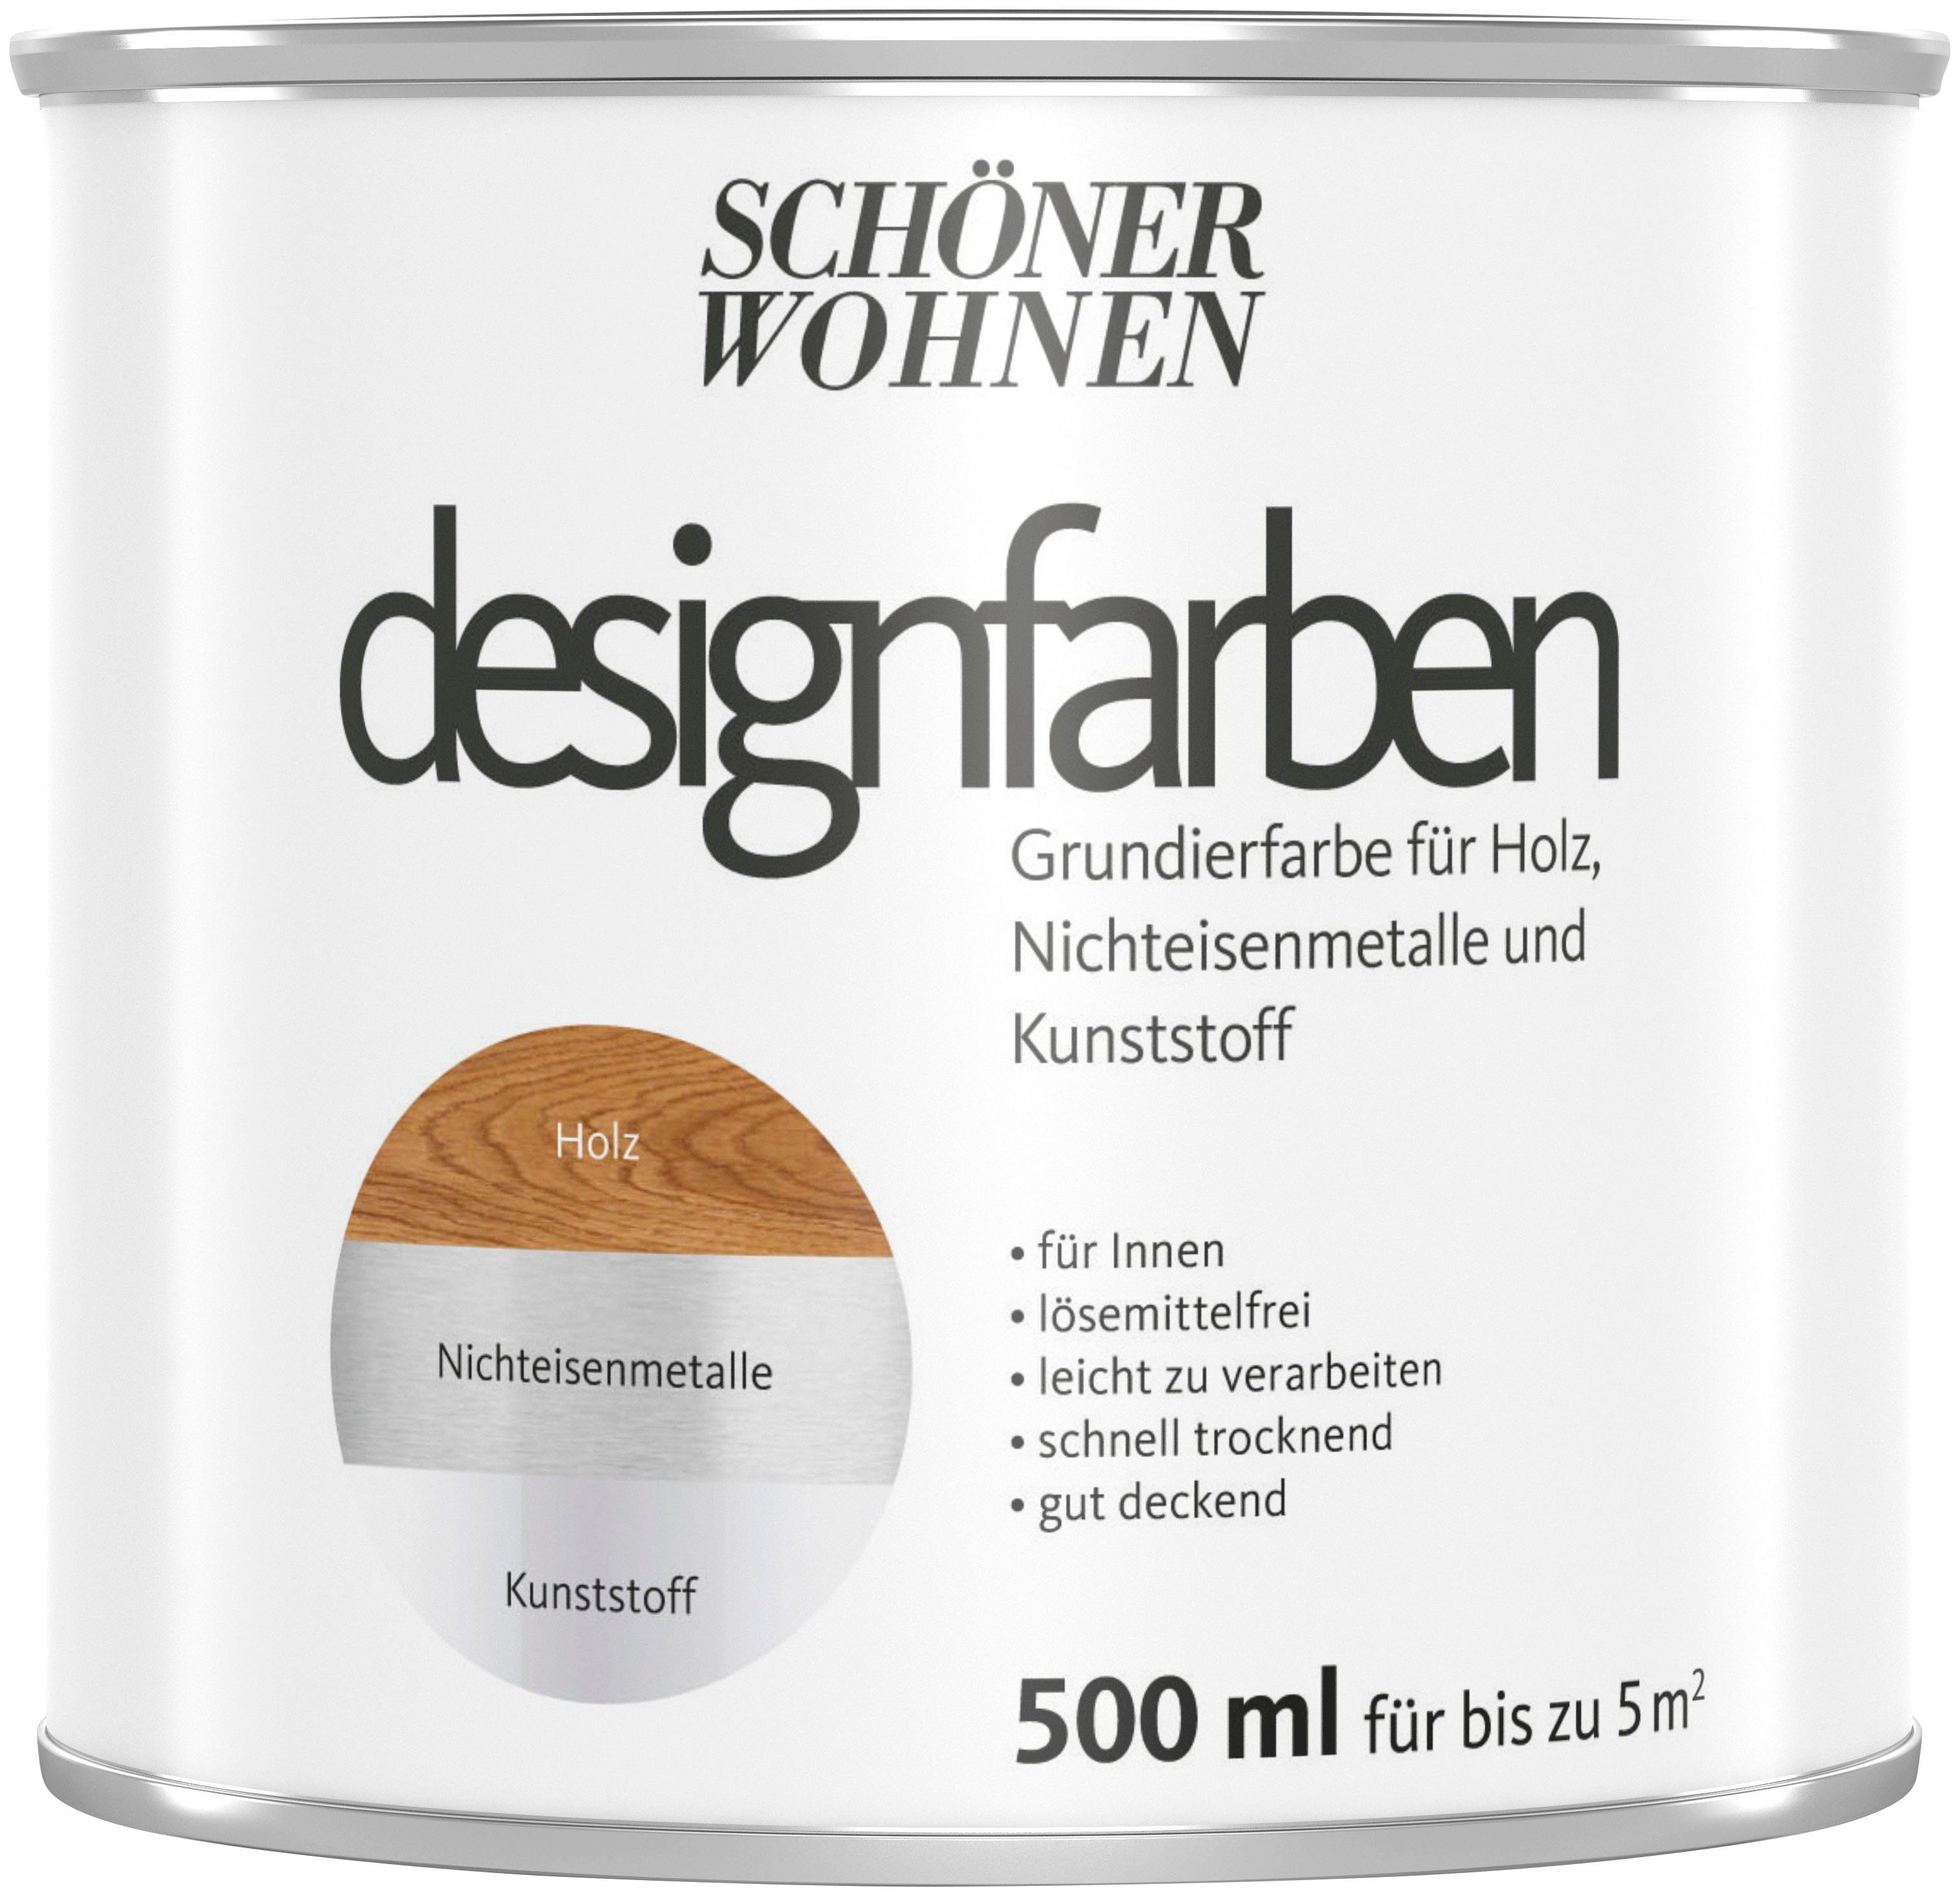 SCHÖNER WOHNEN FARBE Grundierfarbe Designfarben, 500 ml, weiß, für SW Designfarbe - Holz, Kunststoff, Nichteisenmetalle